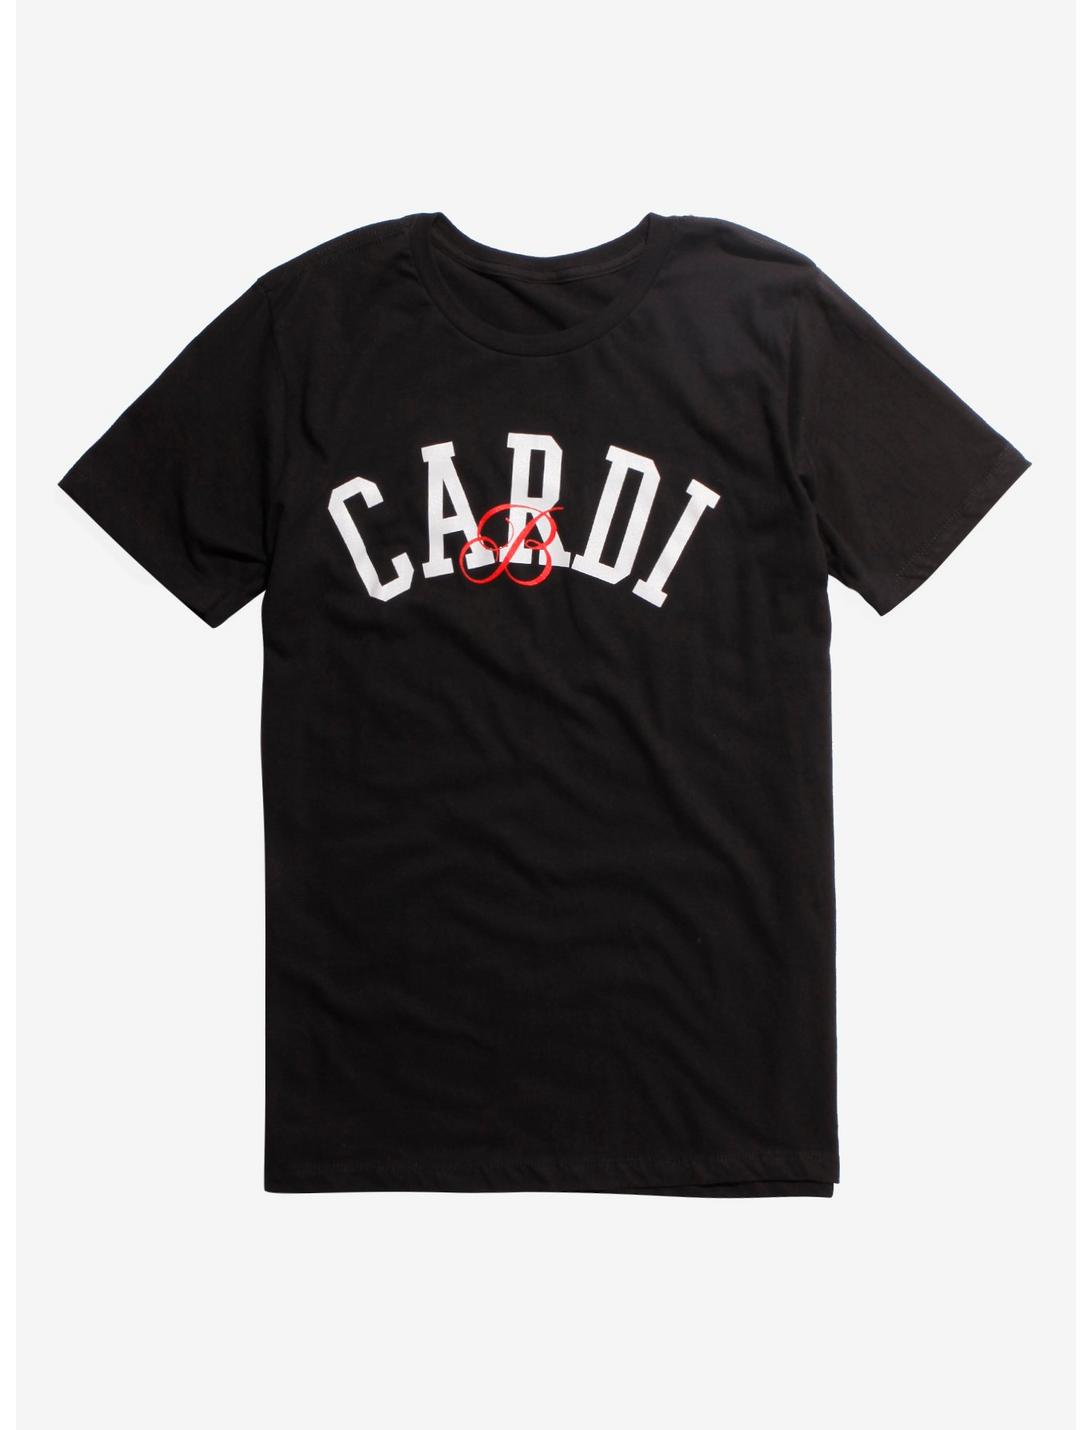 Cardi B Varsity Logo T-Shirt, BLACK, hi-res